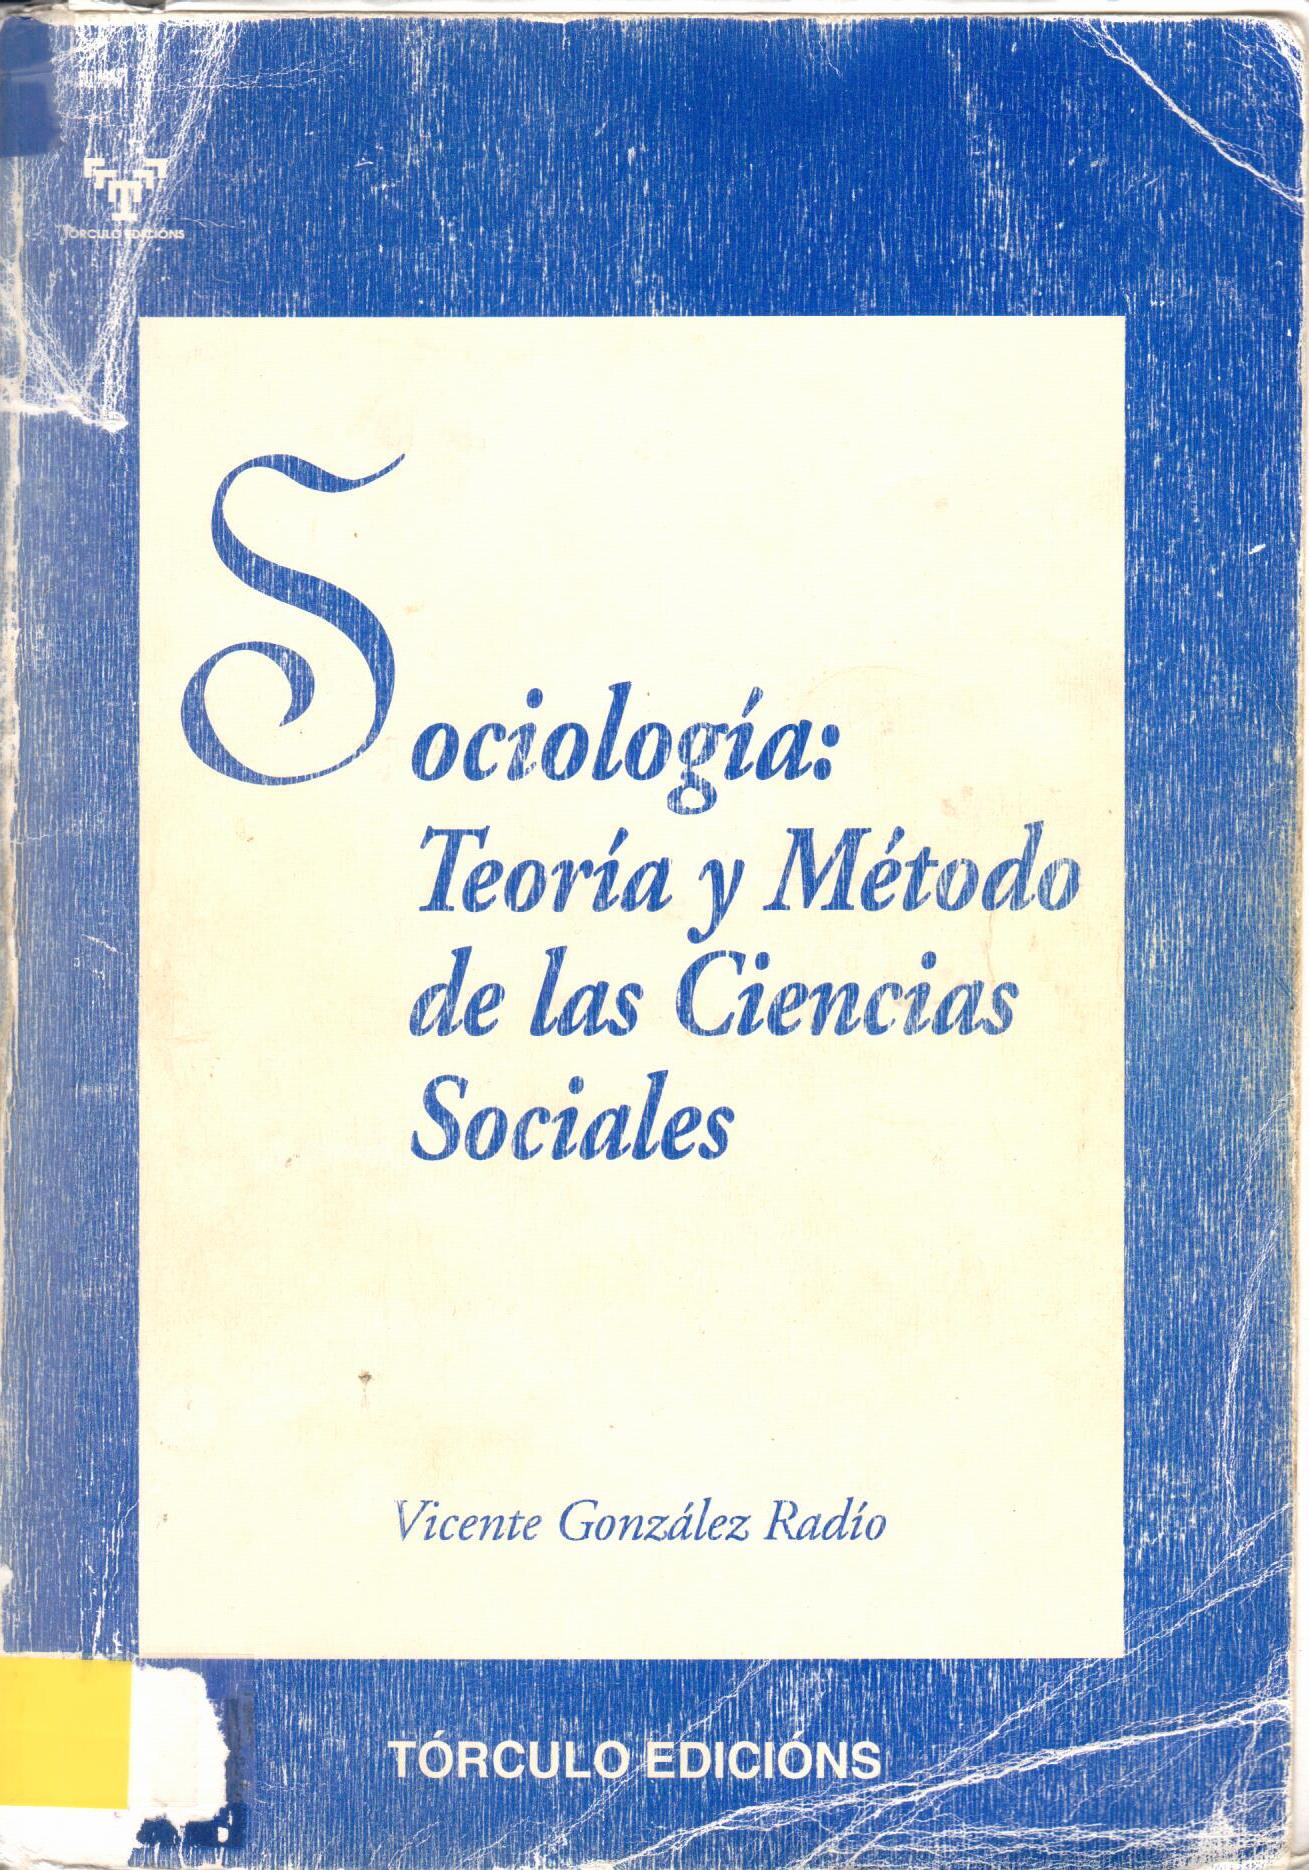 Imagen de portada del libro Sociología